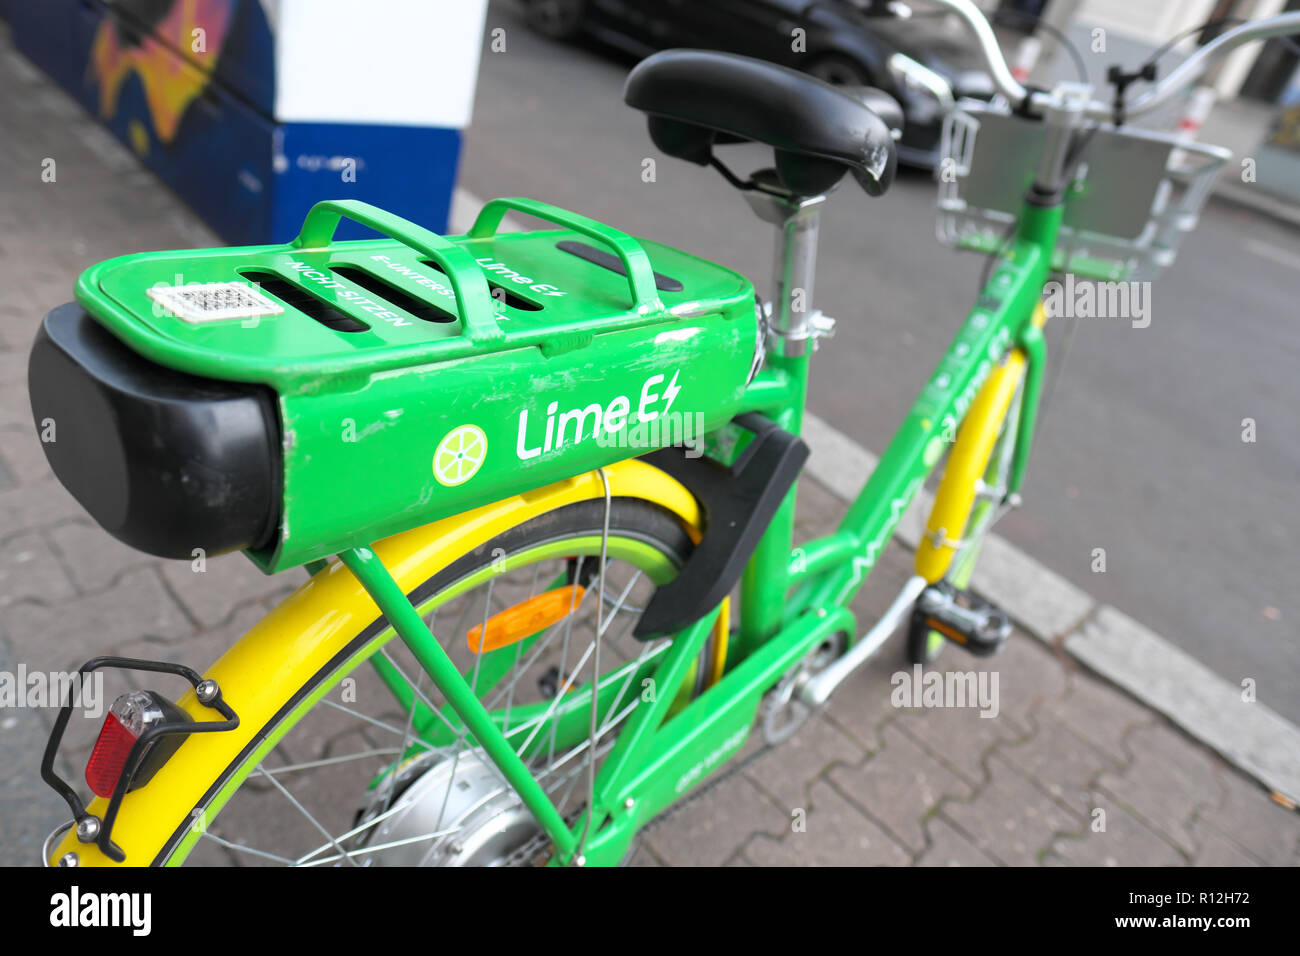 Berlin Allemagne - pile électrique location exploité par la chaux eco friendly de vélos 2018 Banque D'Images